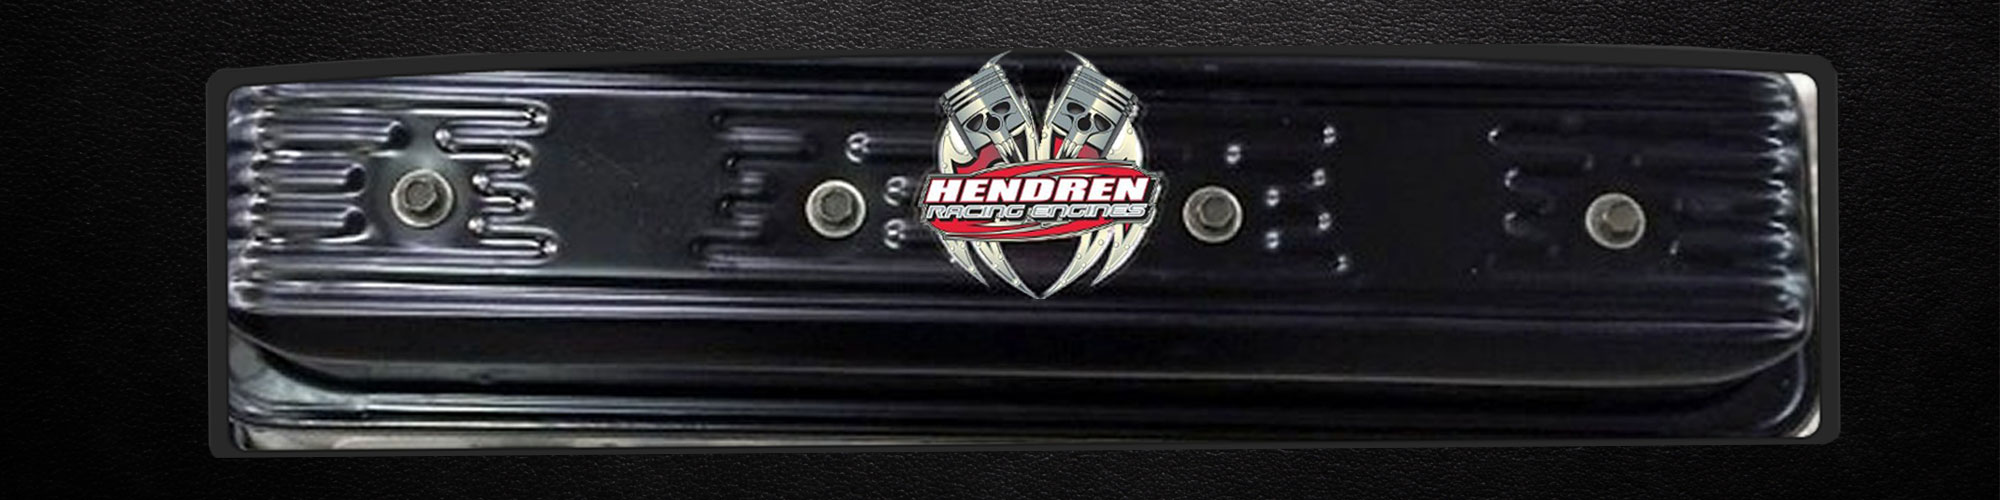 Hendren Racing Engines